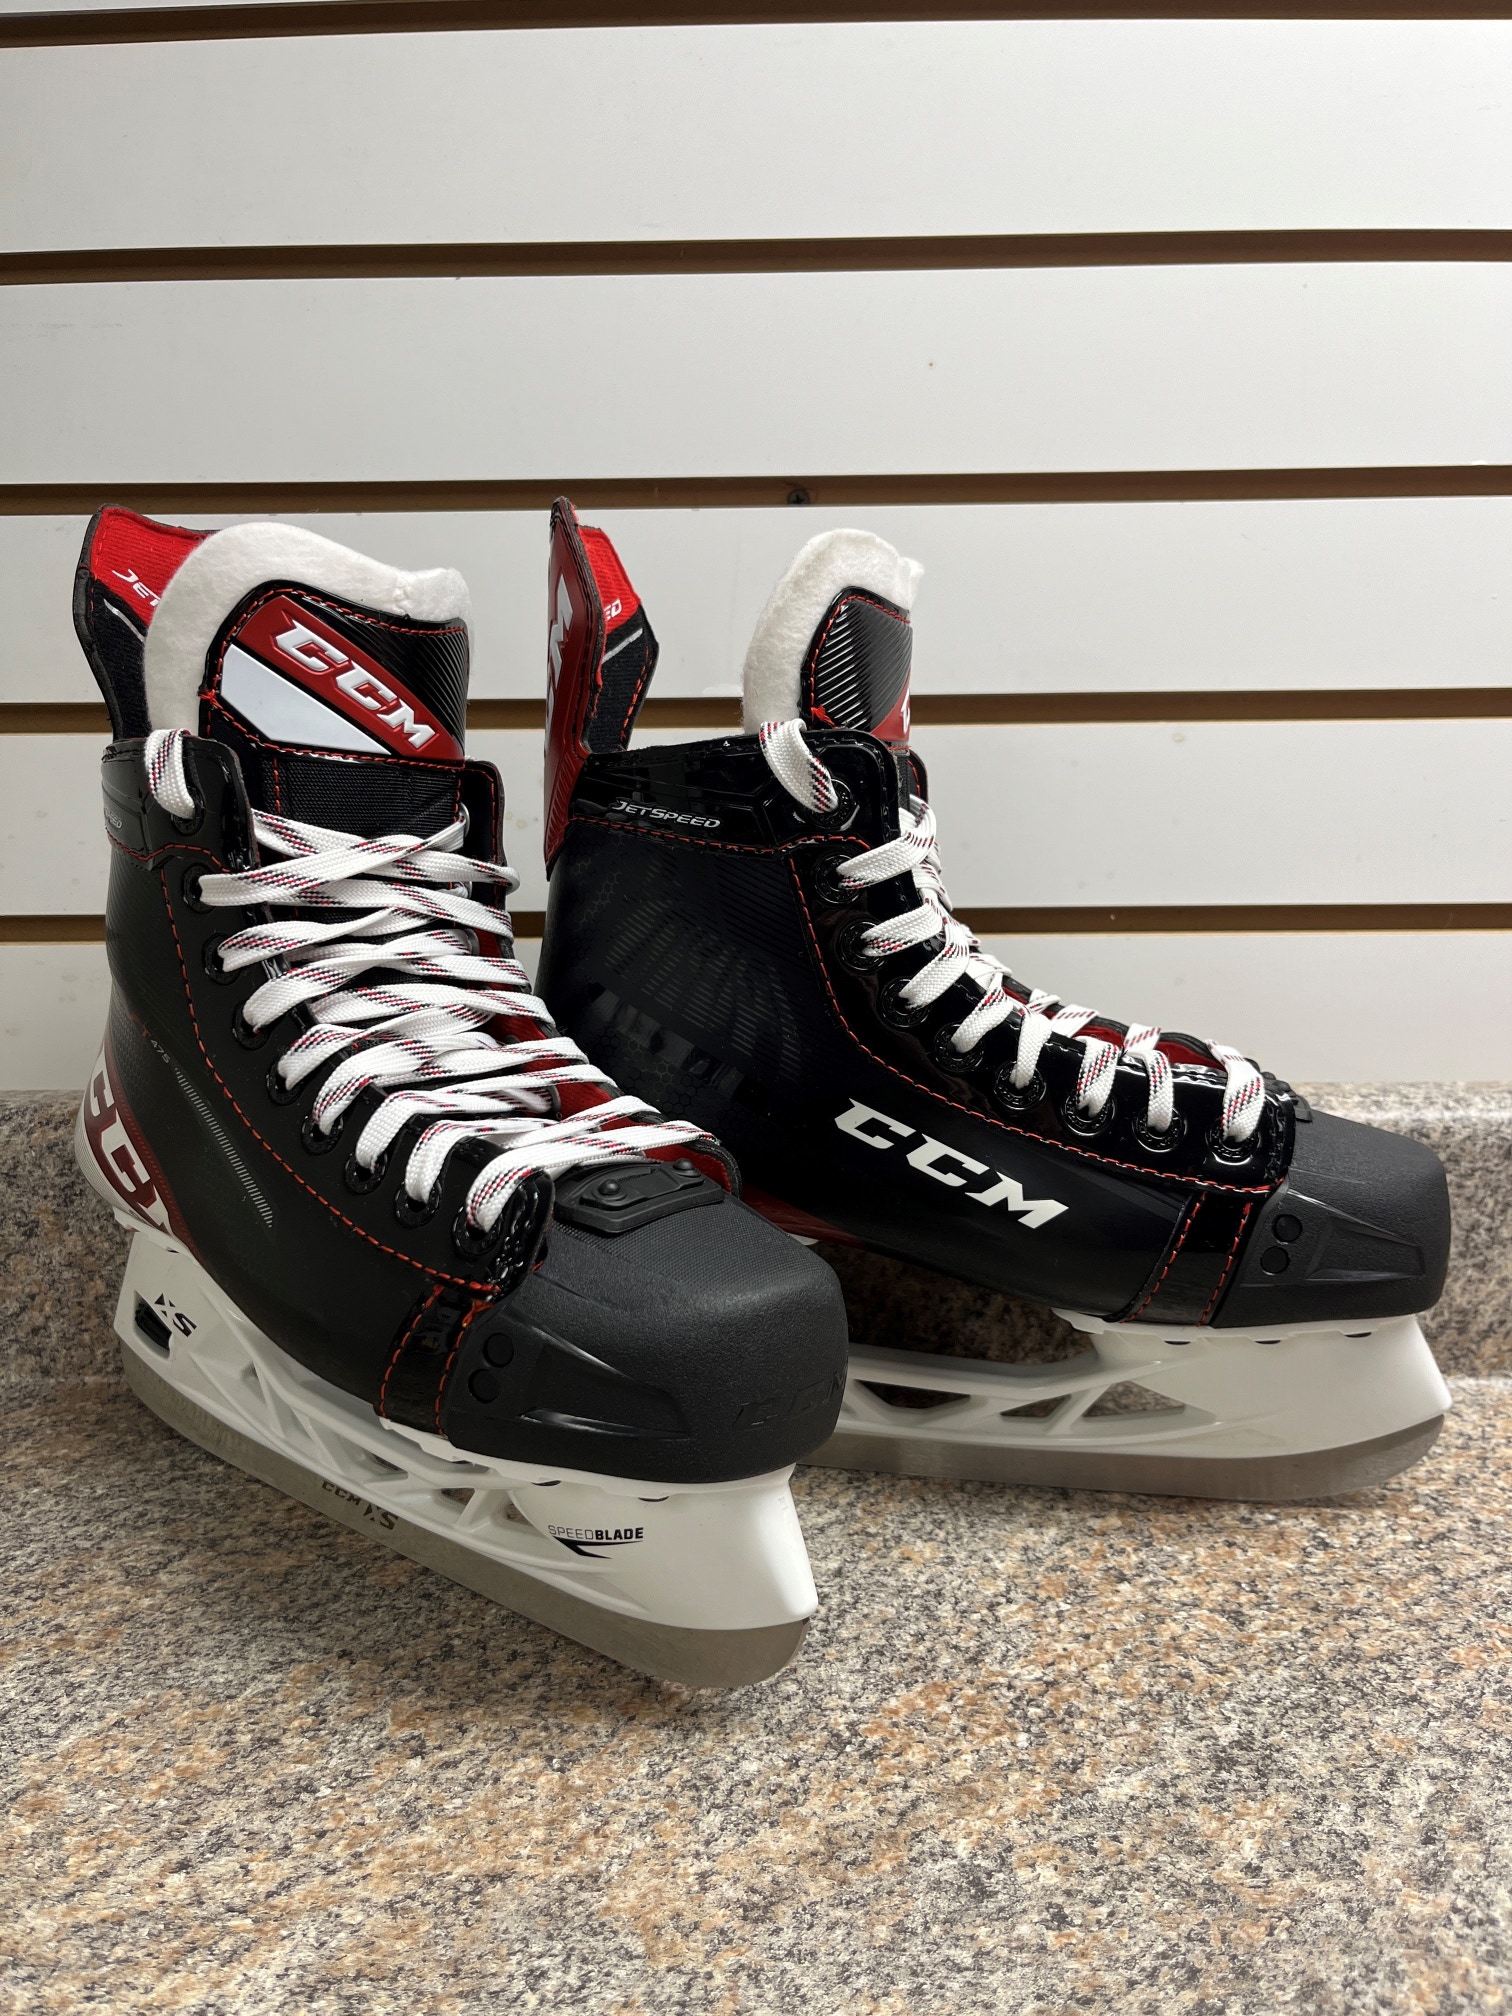 New CCM JetSpeed FT475 Hockey Skates Size 6